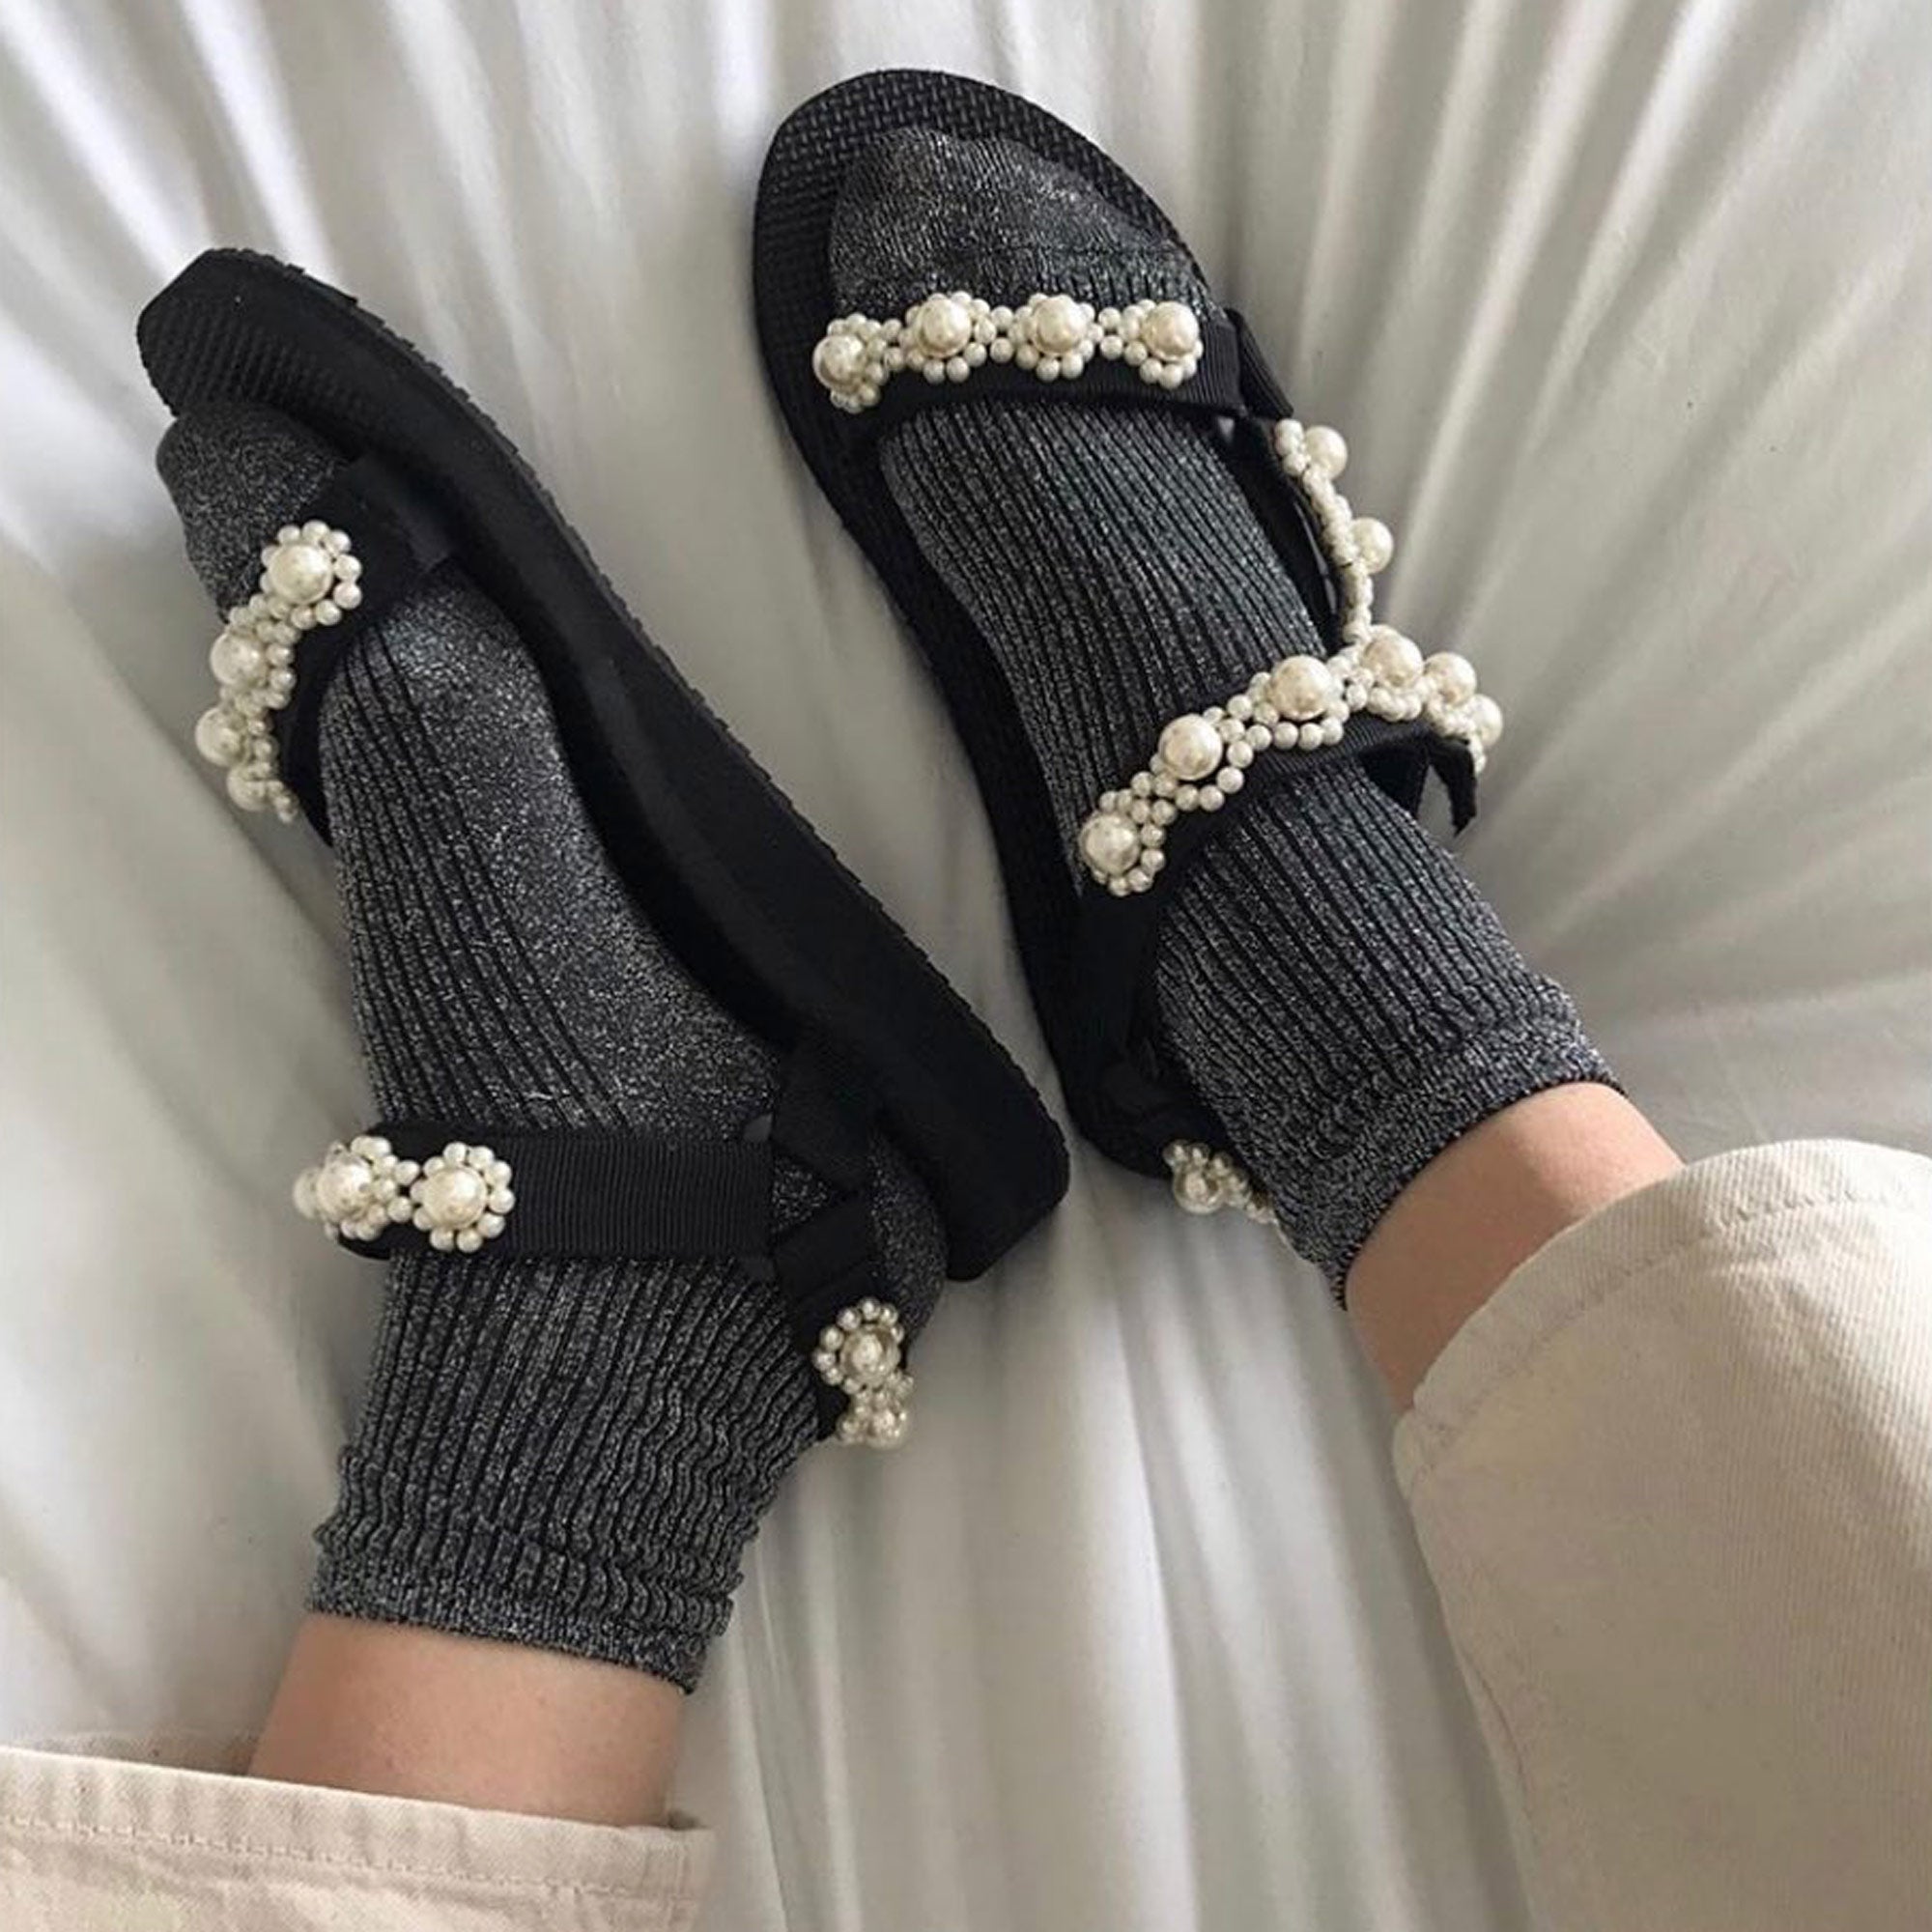 embellished birkenstock sandals